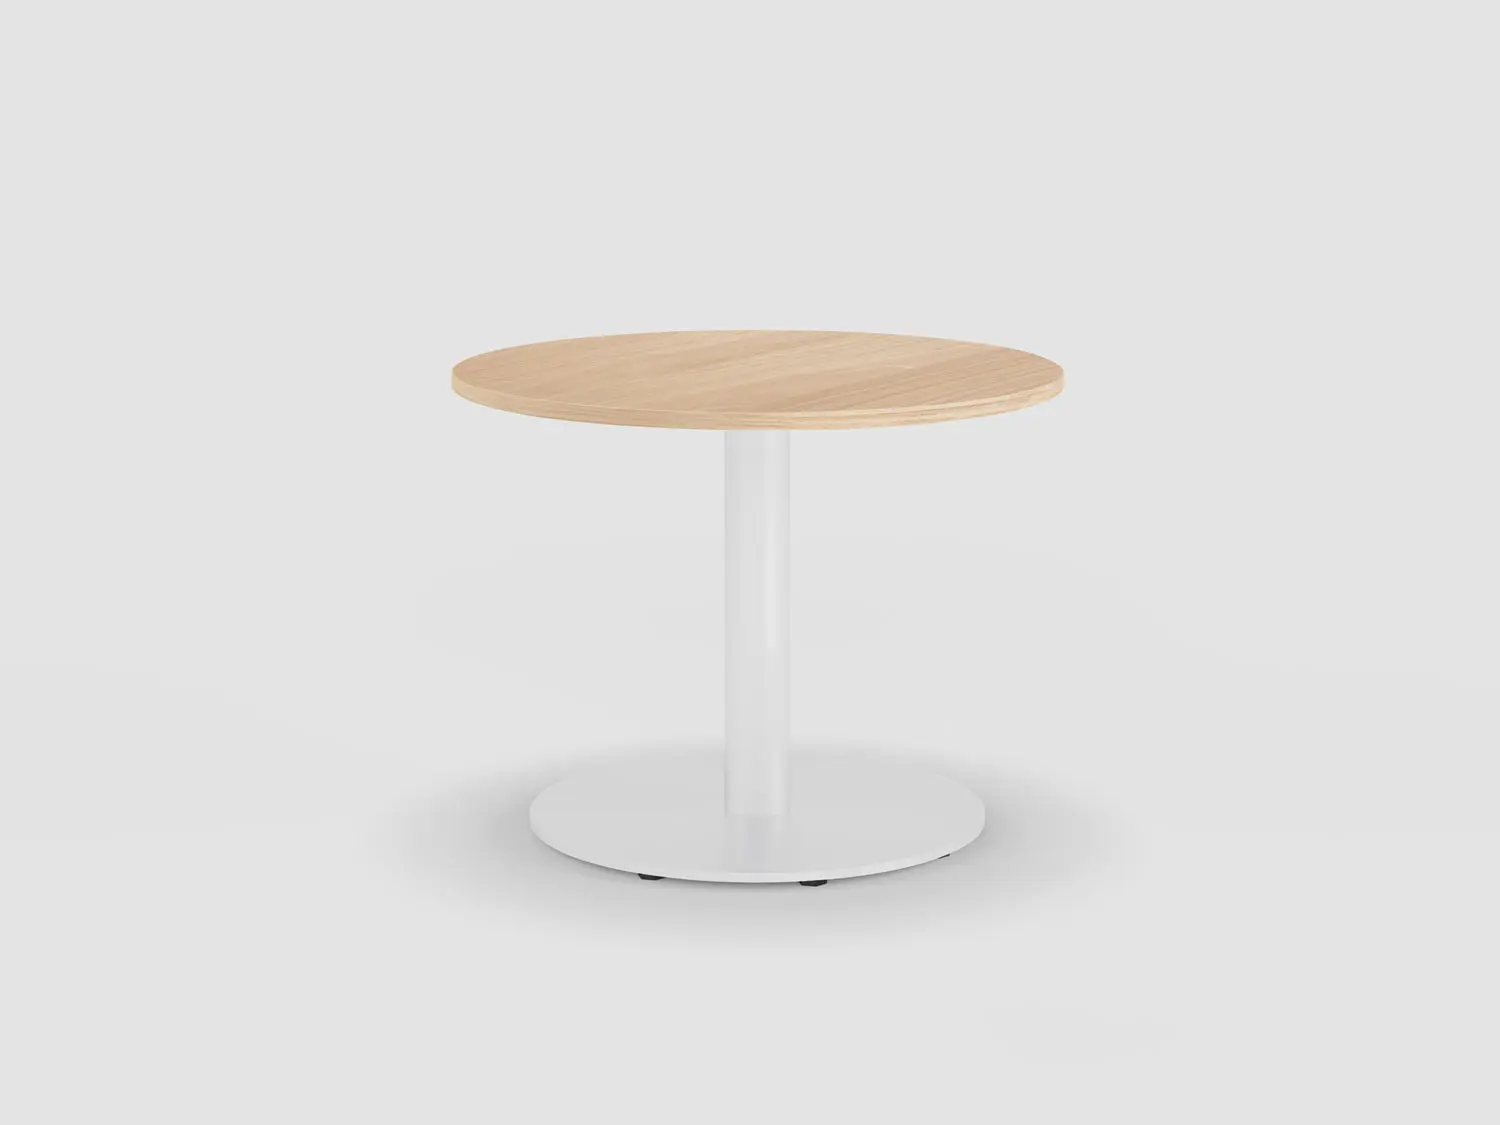 t-meeting-beistelltisch, Bistro table, Bene Office furniture, Image 1